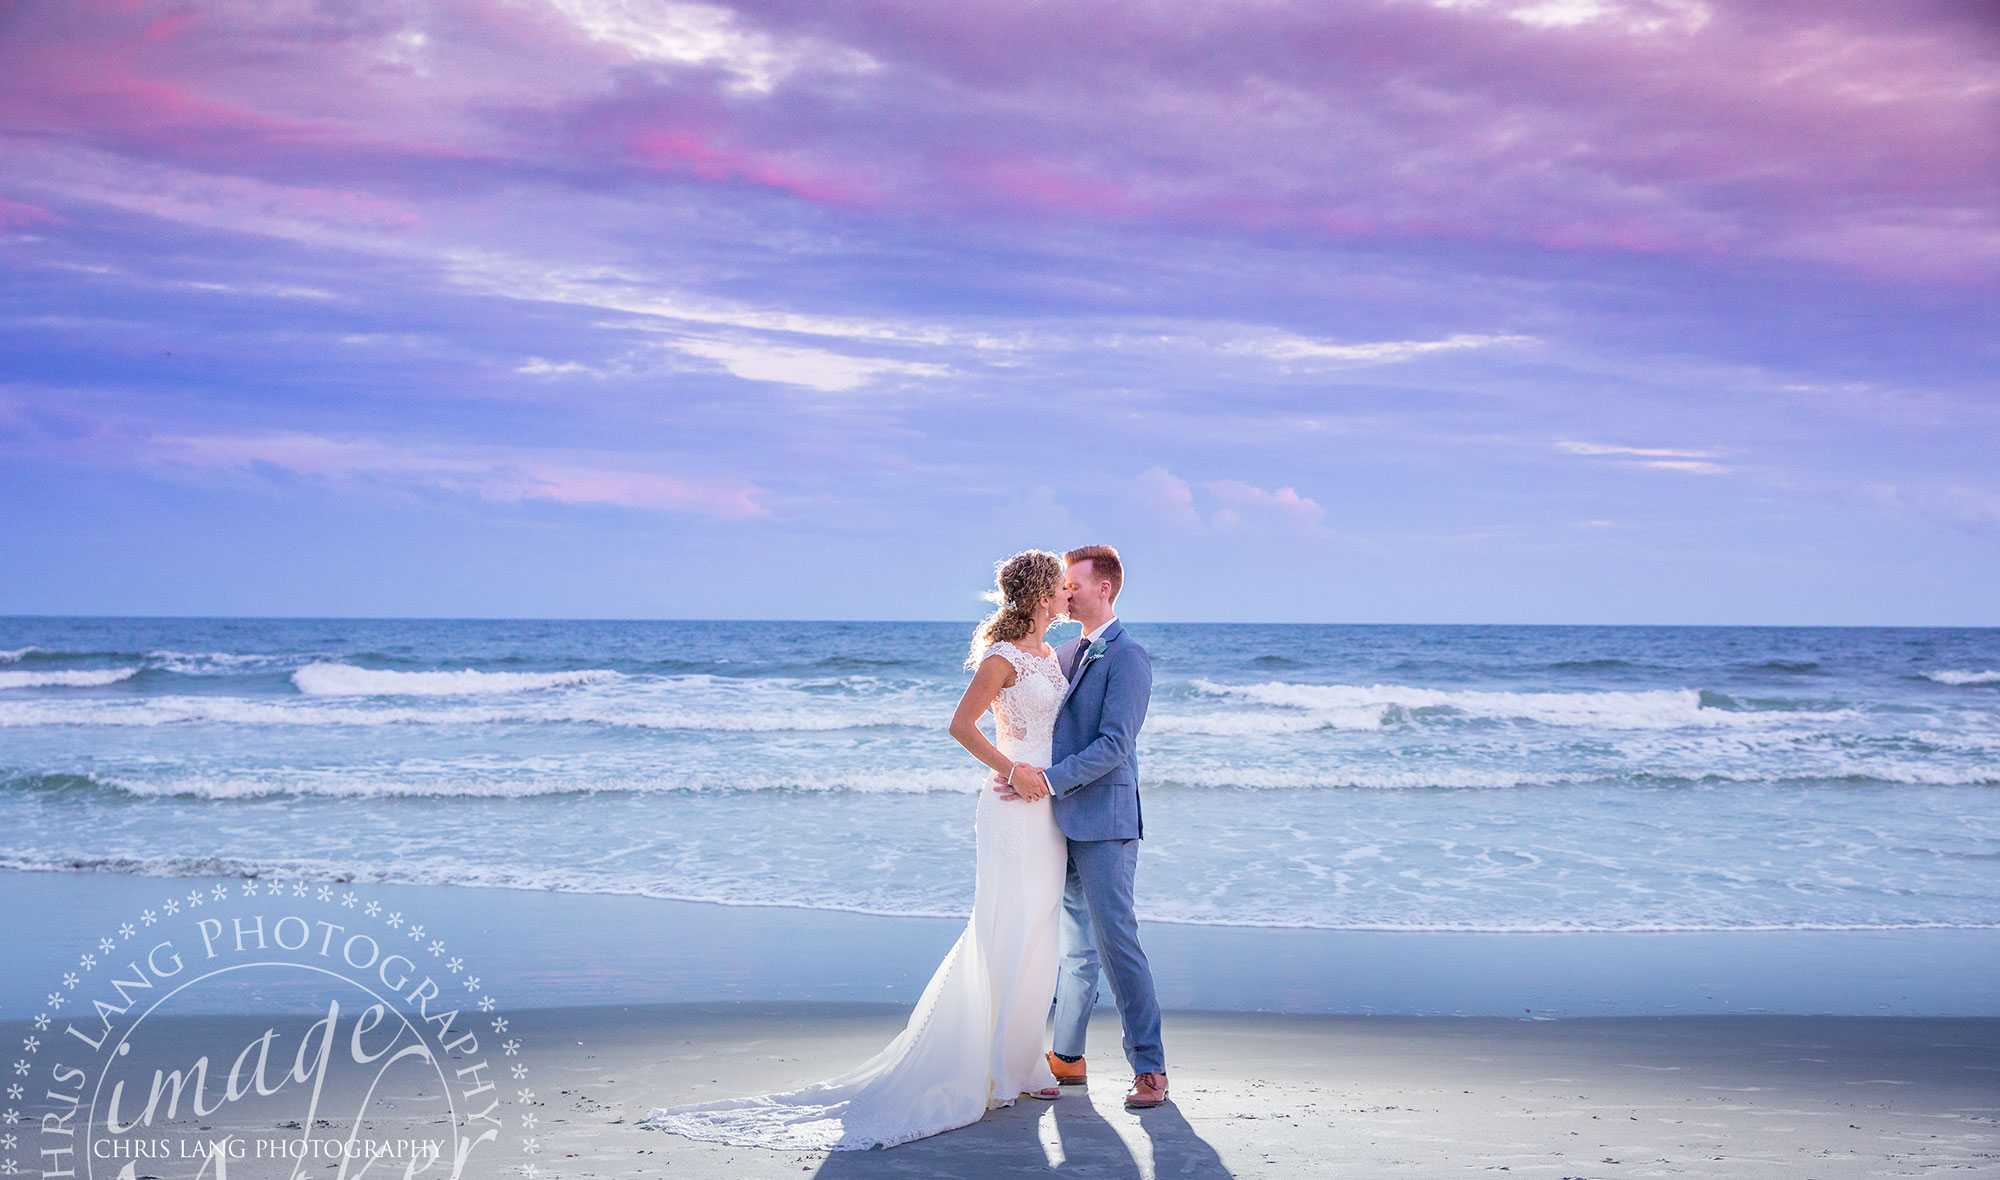 Wilmington Weddiings - Wedding Photography - Wedding Photographers - Wedding Photo - Wedding Ideas - Beach Wedding Photo - Sunset - Wilmington NC